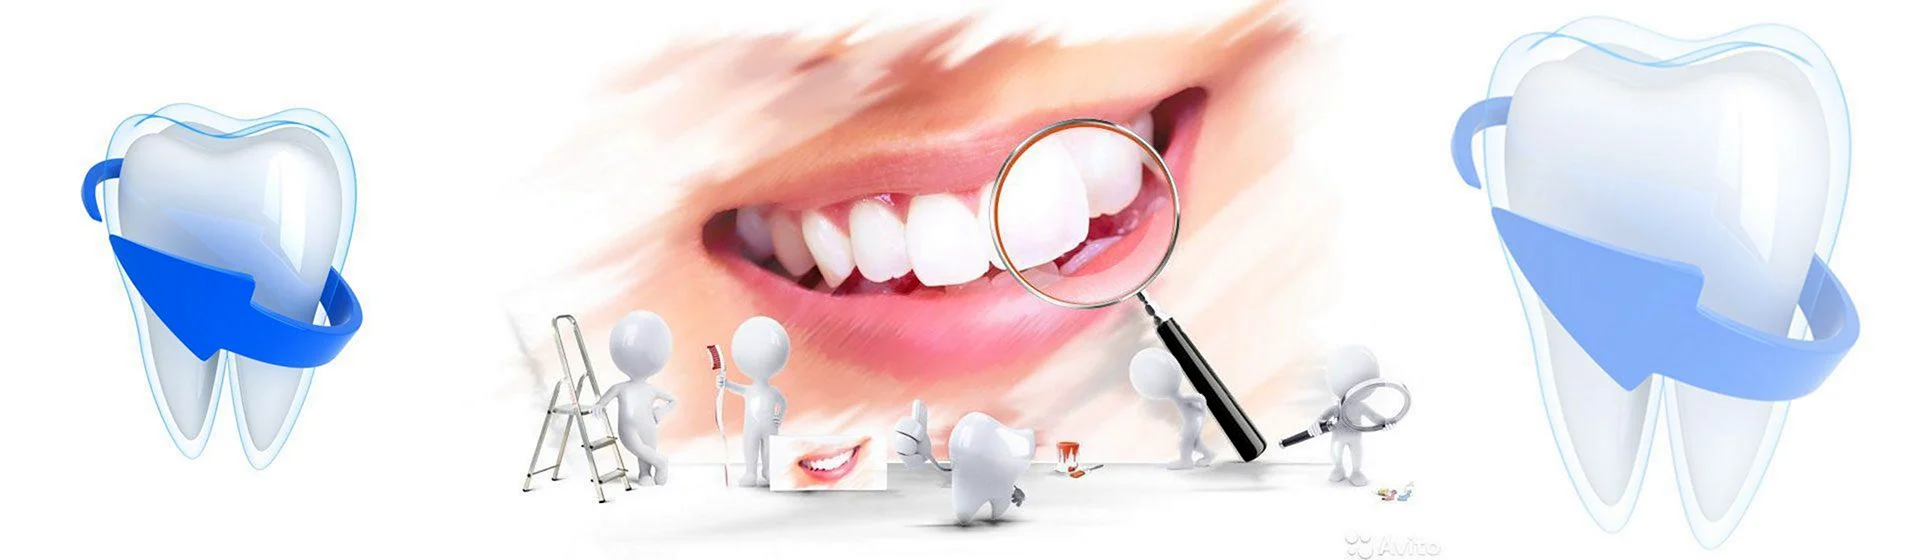 Красивые на тему стоматологии